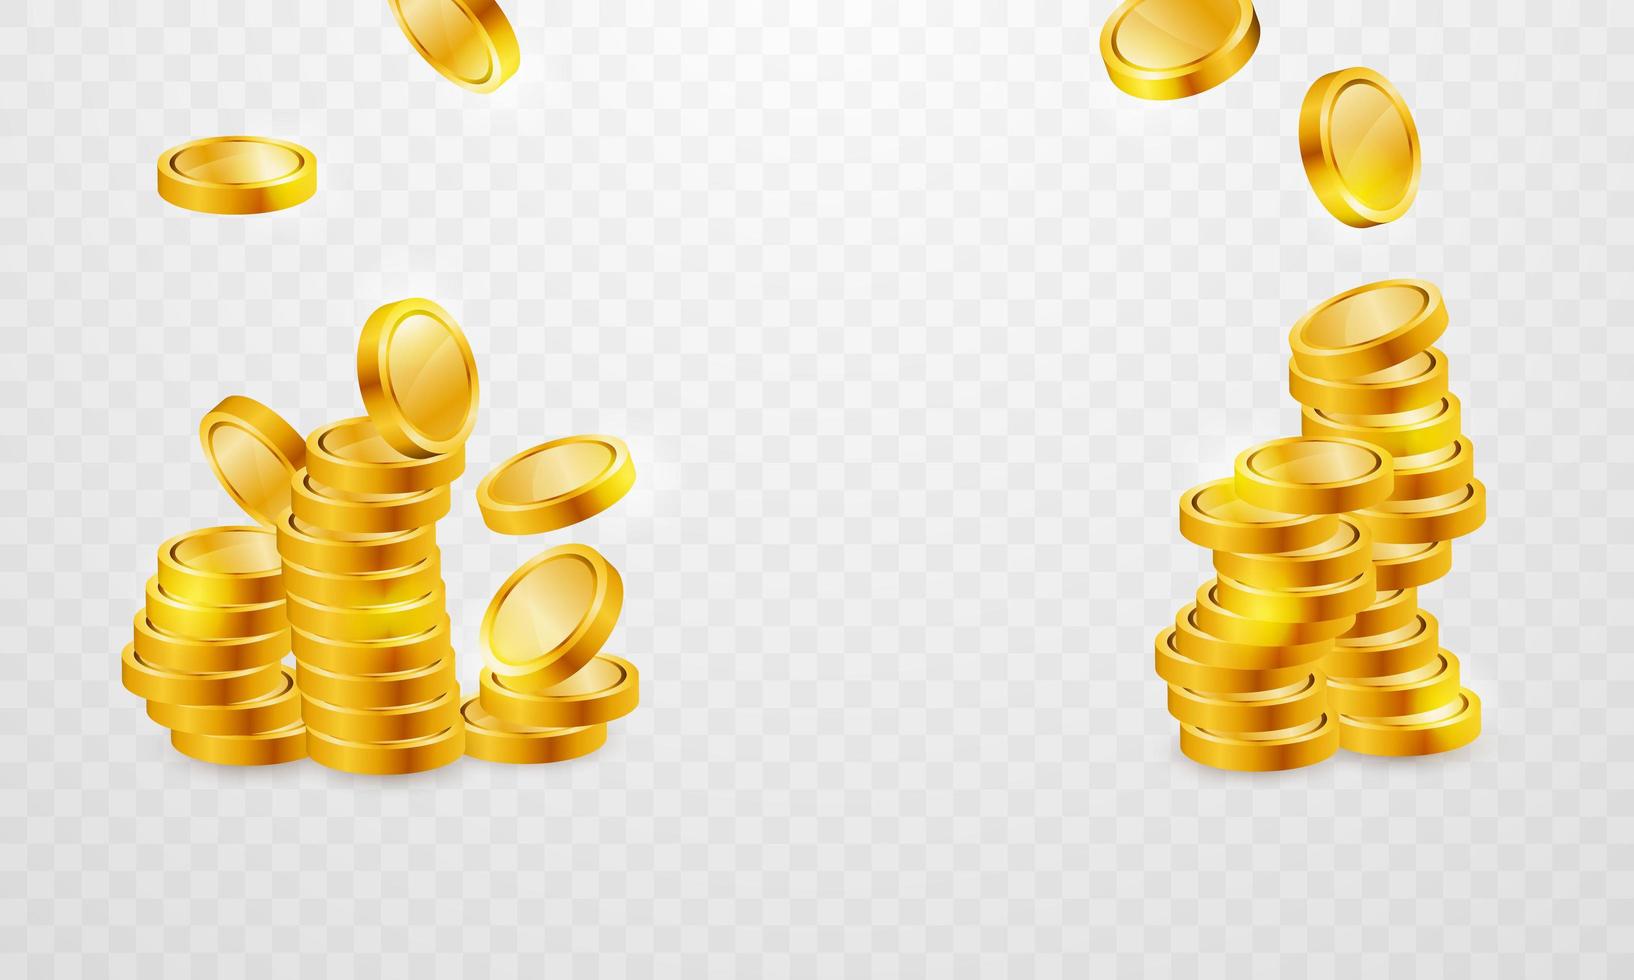 Goldmünzenstapel für Casino eingestellt vektor